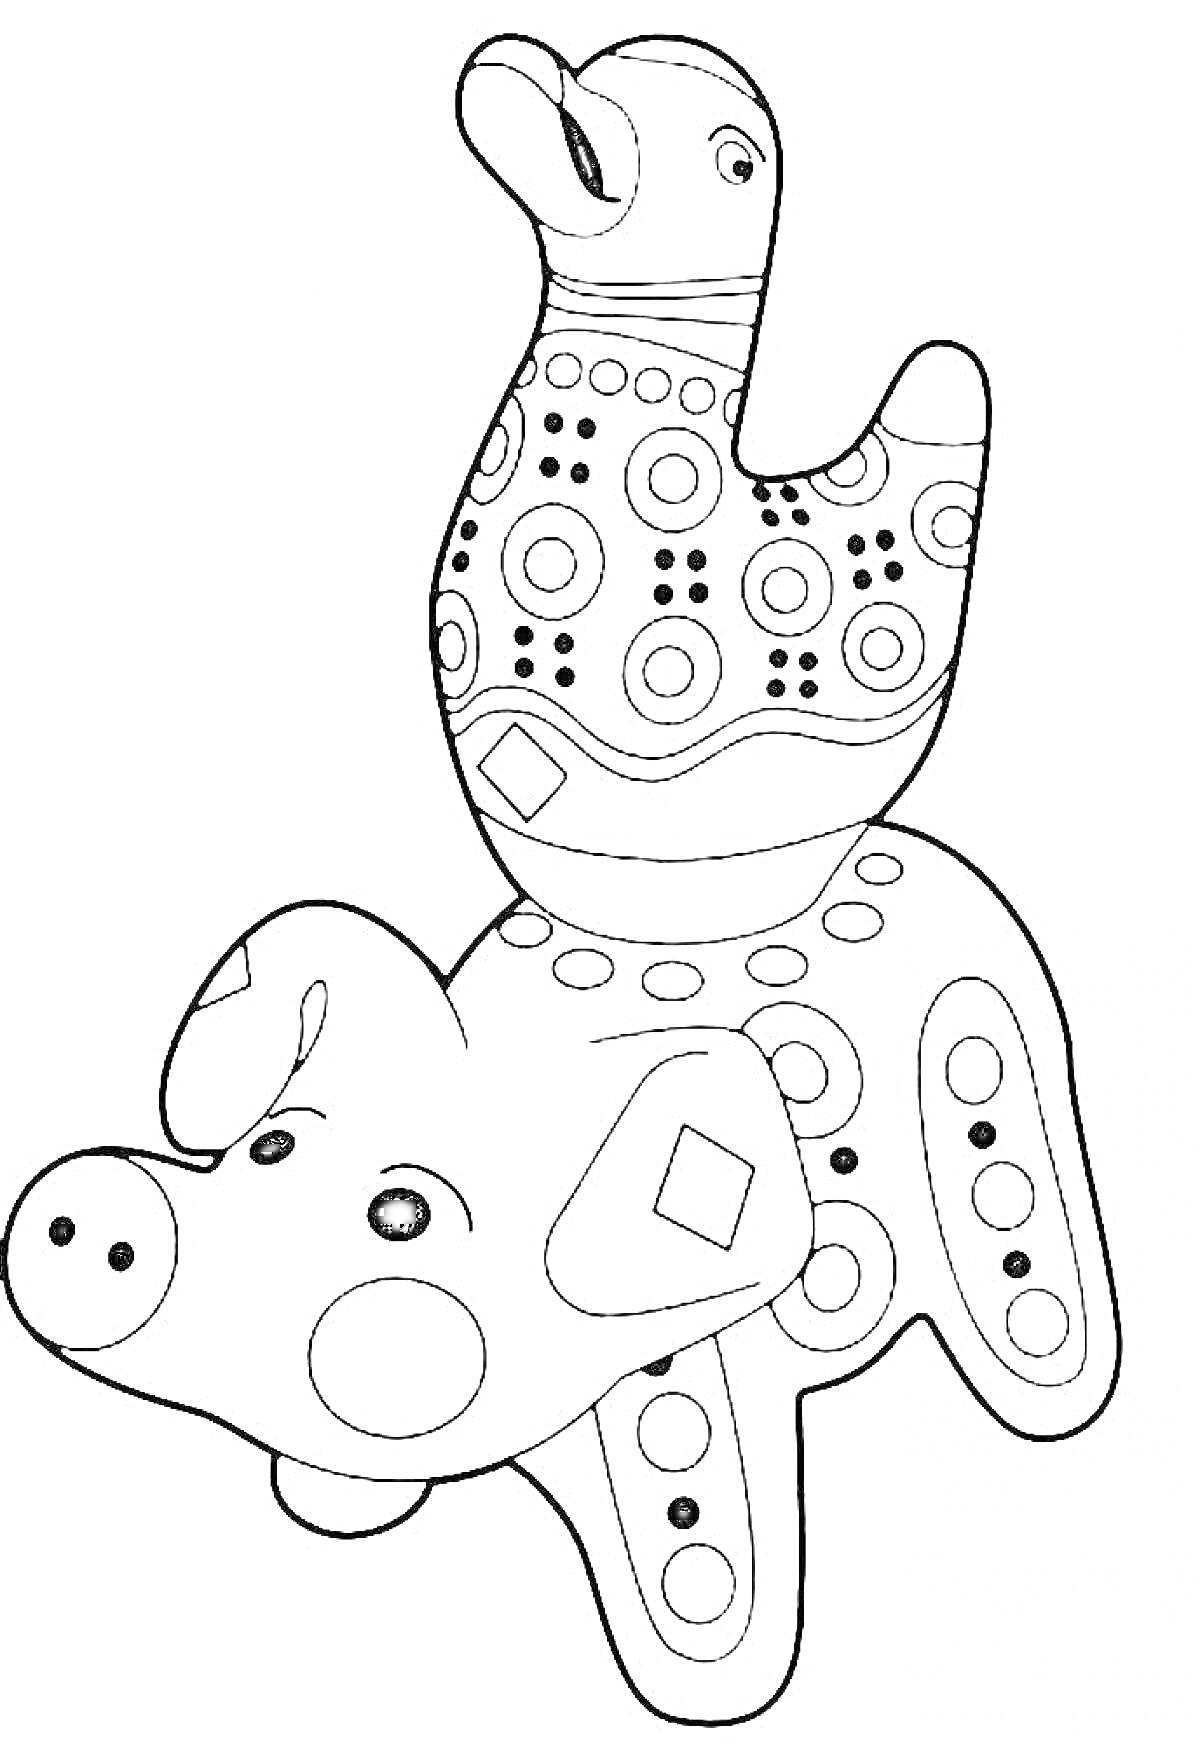 Раскраска Дымковская игрушка - утка на спине свиньи с узорами из кругов, ромбов и линий